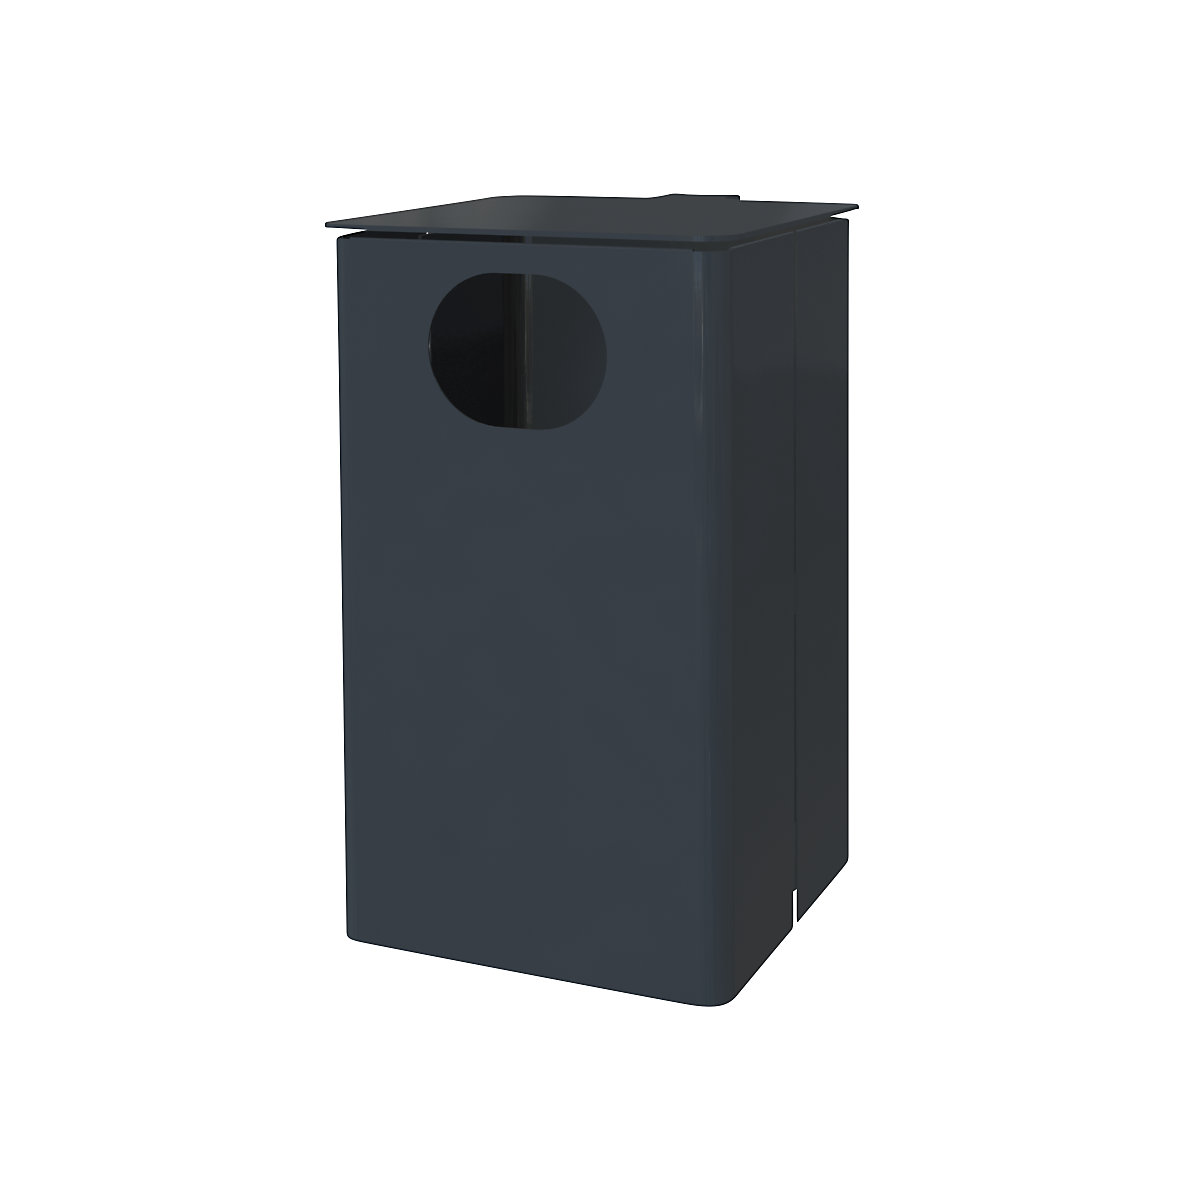 Außen-Abfallbehälter, Volumen 35 l, HxBxT 537 x 325 x 388 mm, anthrazitgrau-1